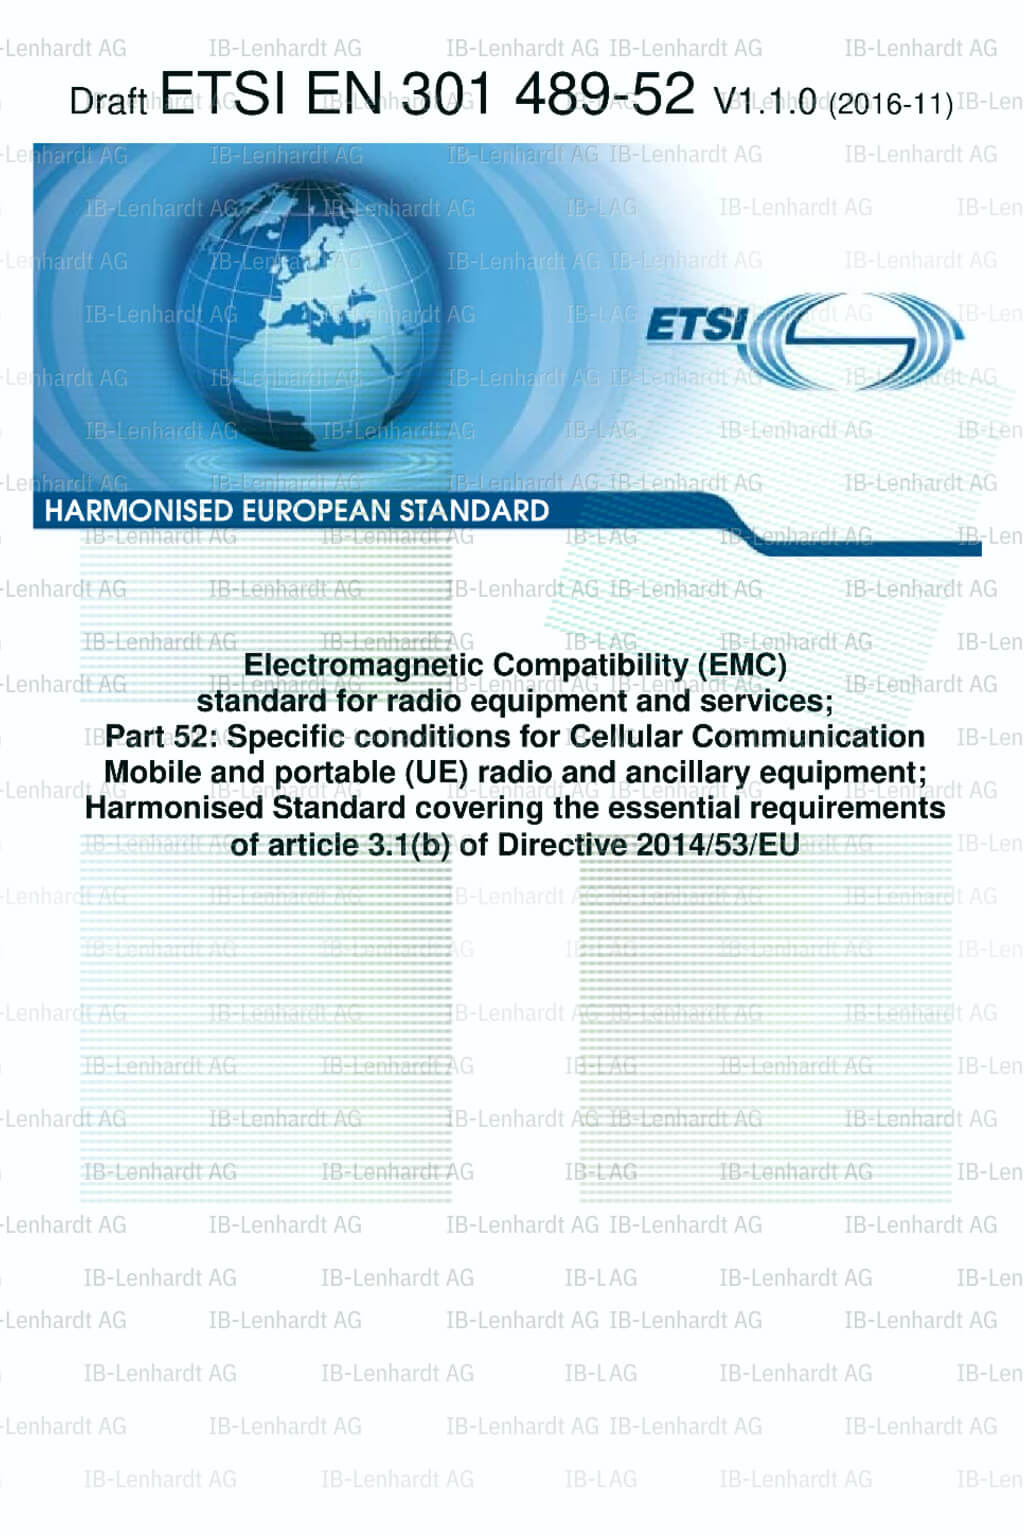 ETSI EN 301 489-53 V1.1.1